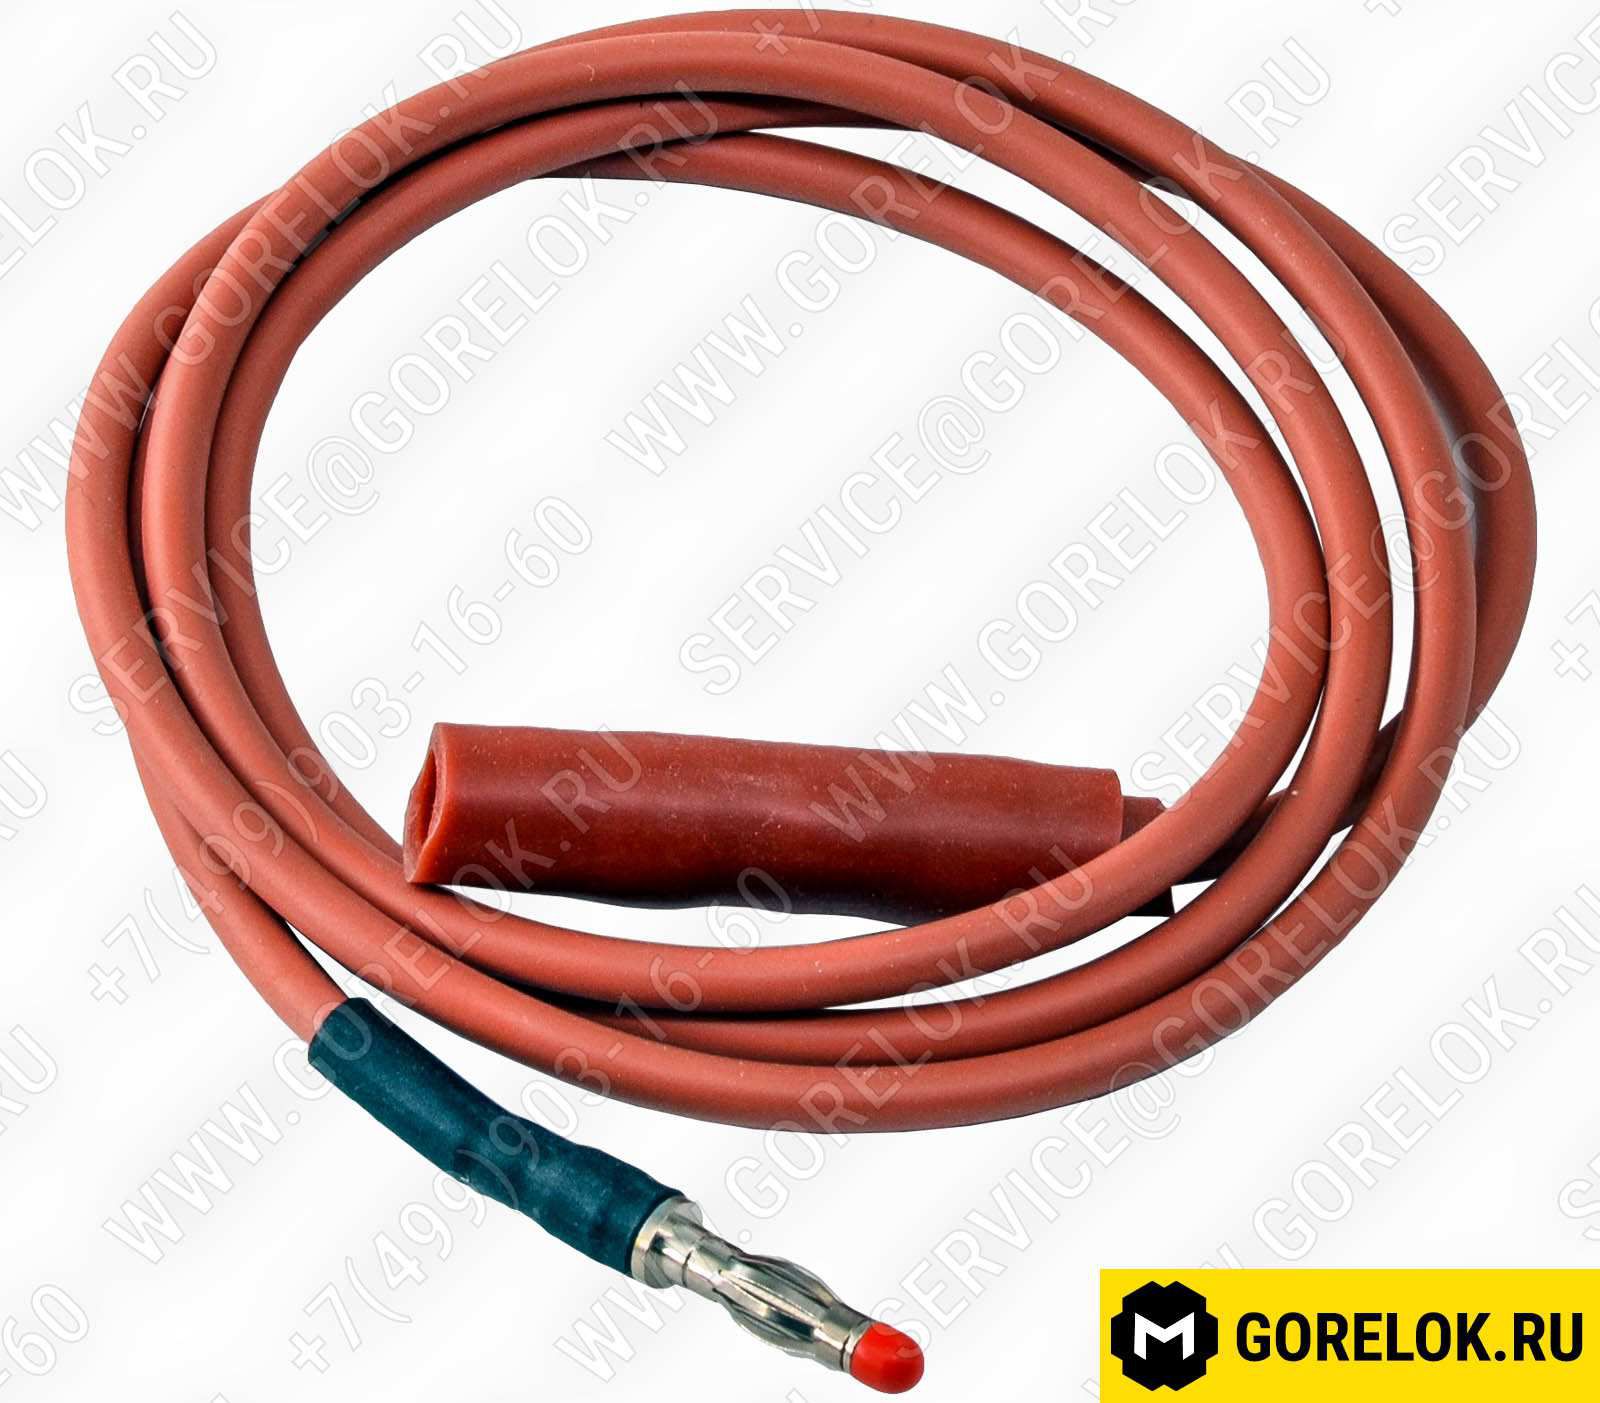 653010126 Новые поступления: Conn. cable 2 X 0.75 23030012062